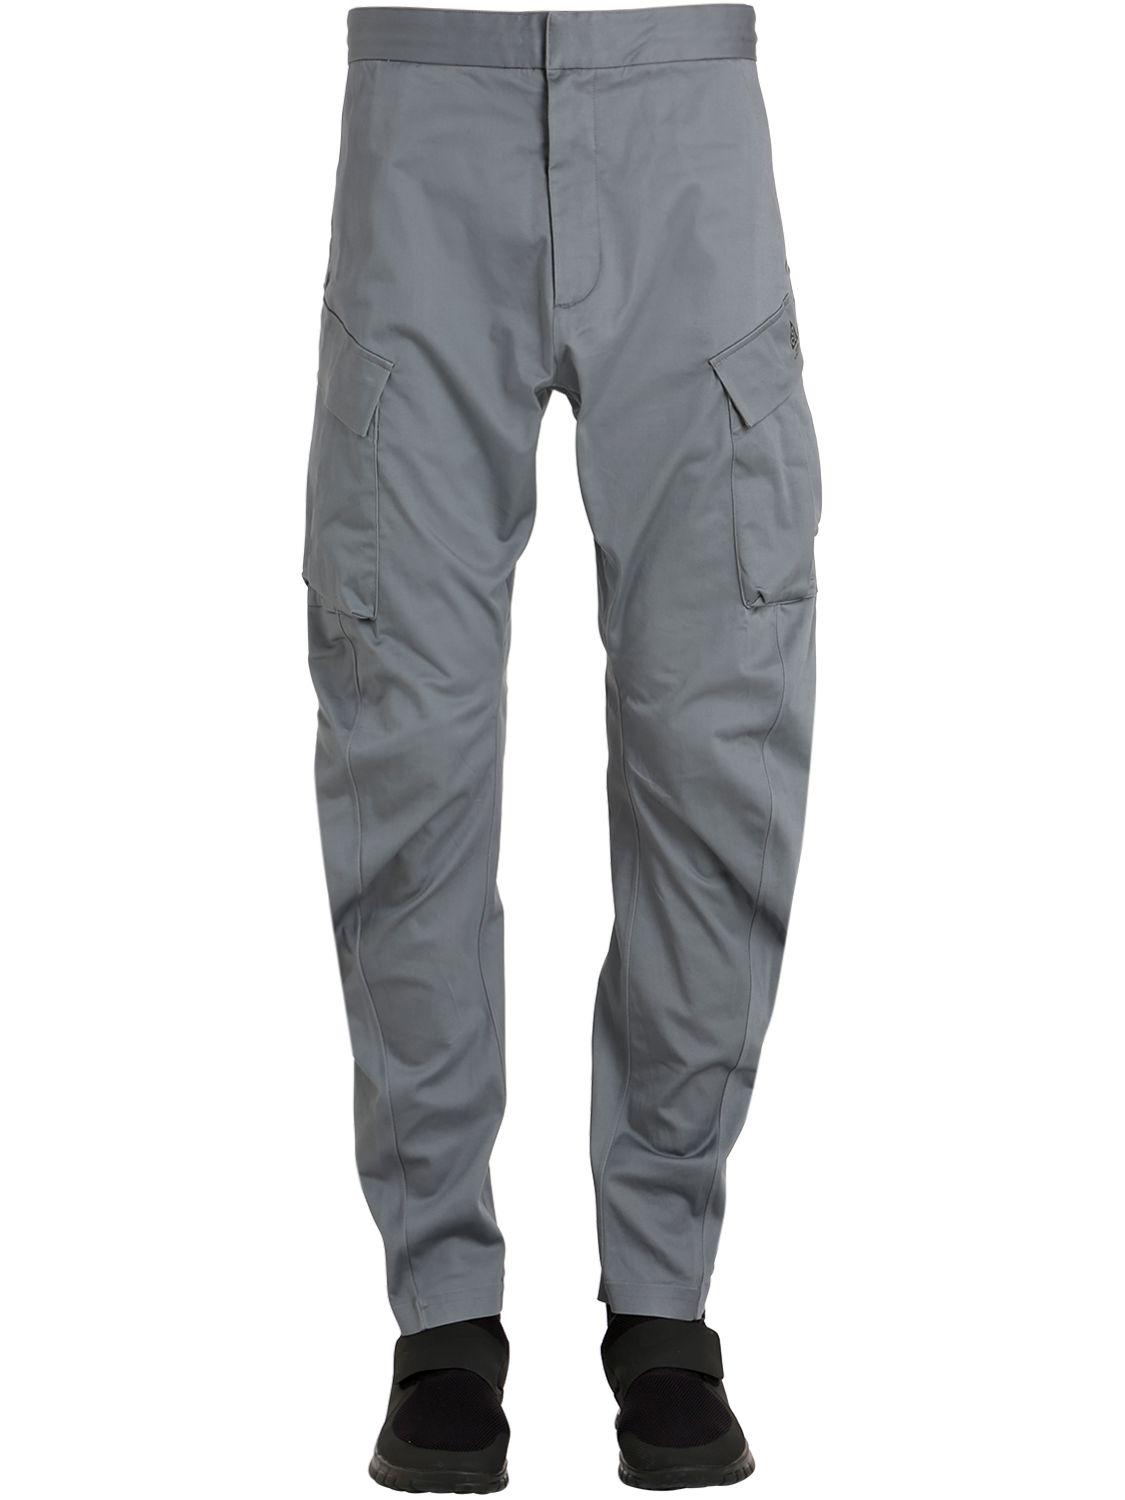 grey cargo pants nike